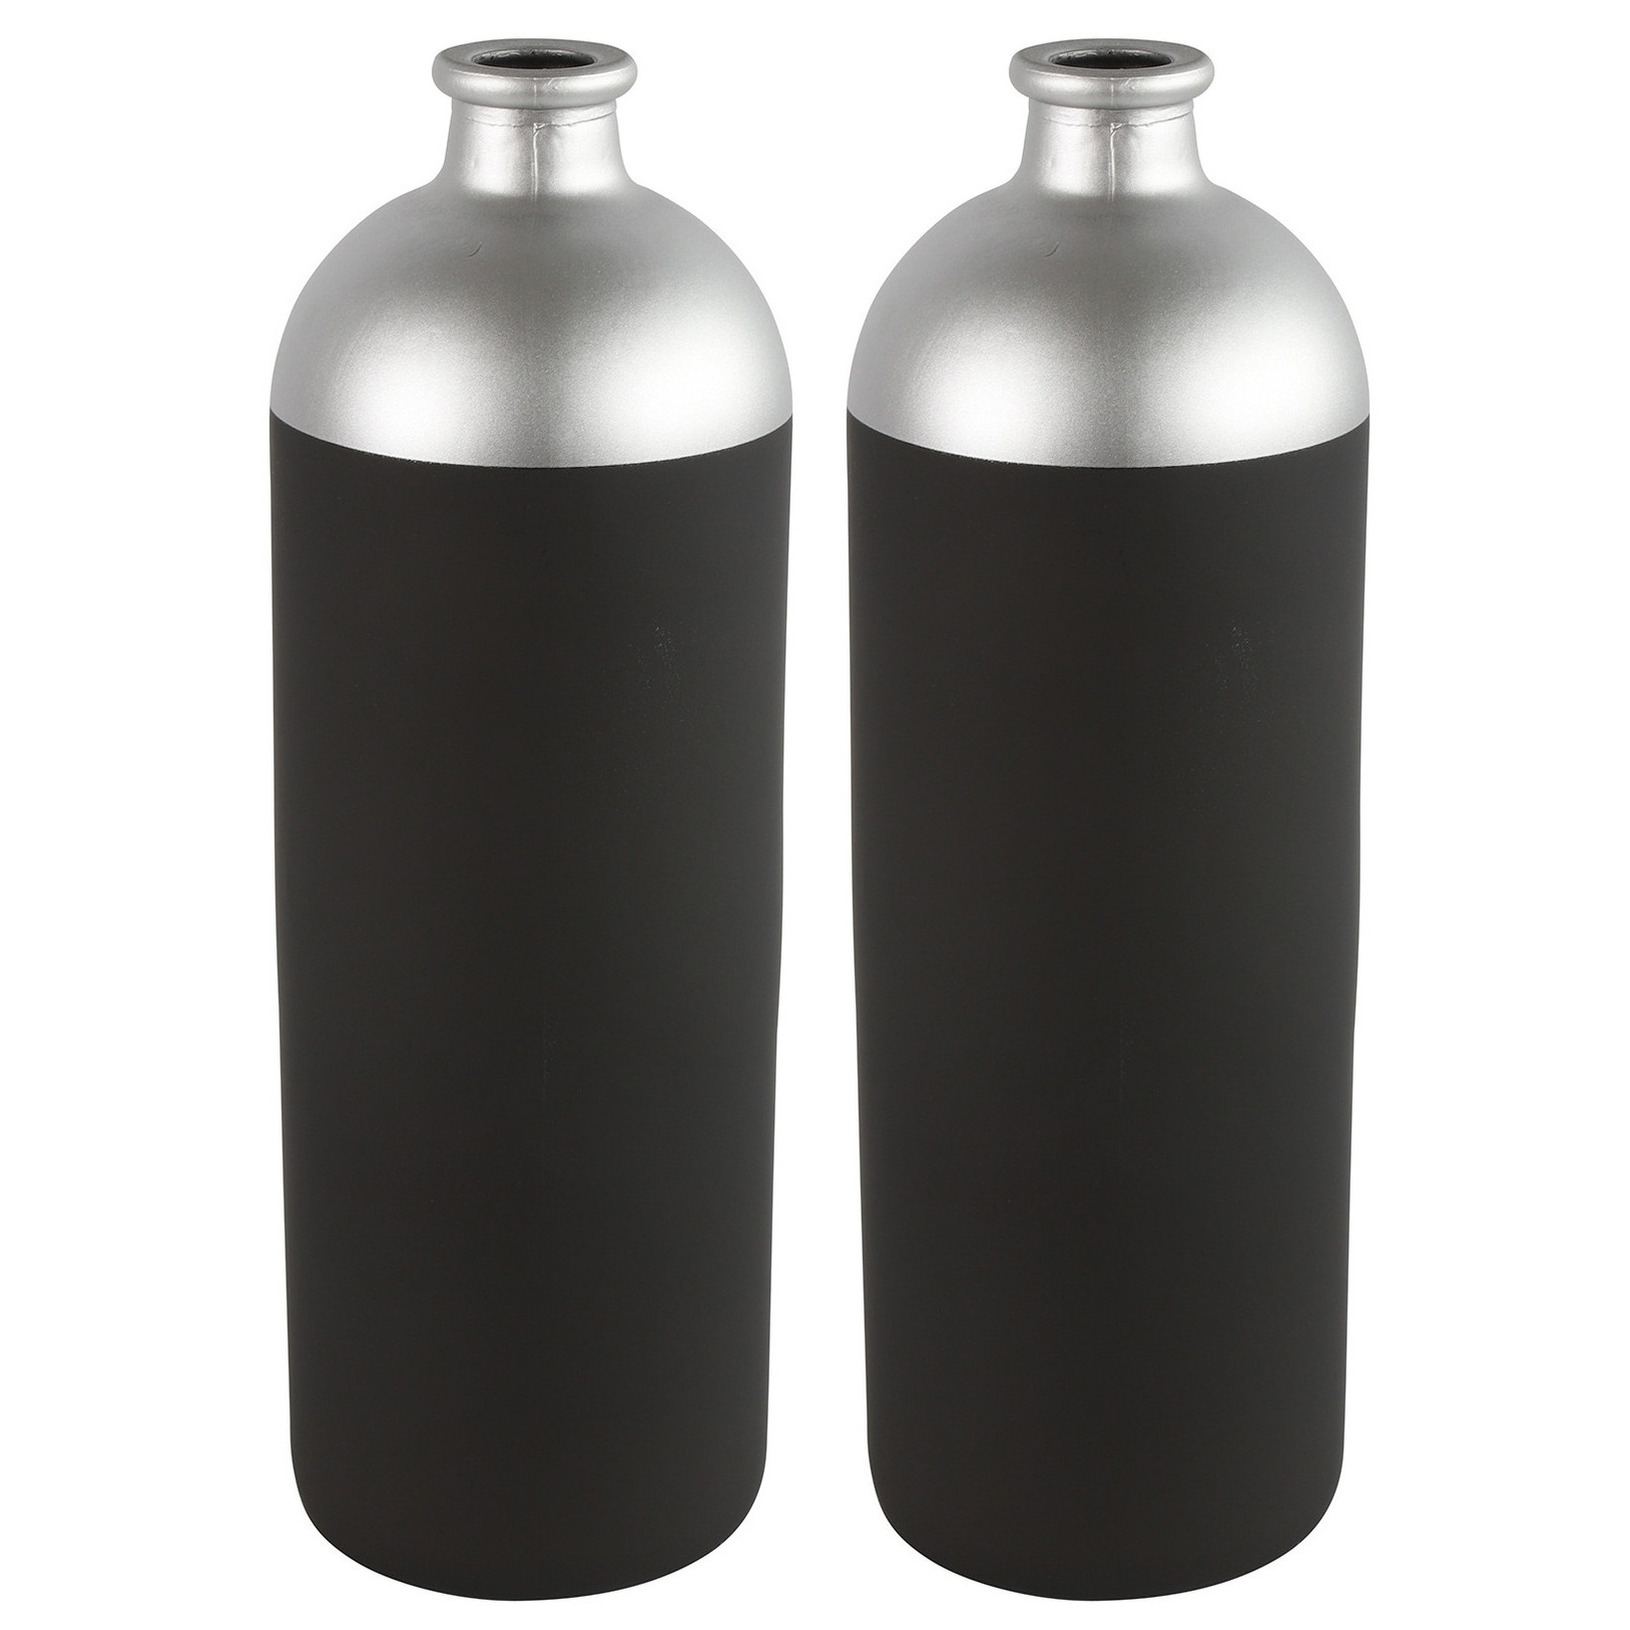 Countryfield Bloemen-Deco vaas 2x zwart-zilver glas 13 x 41 cm